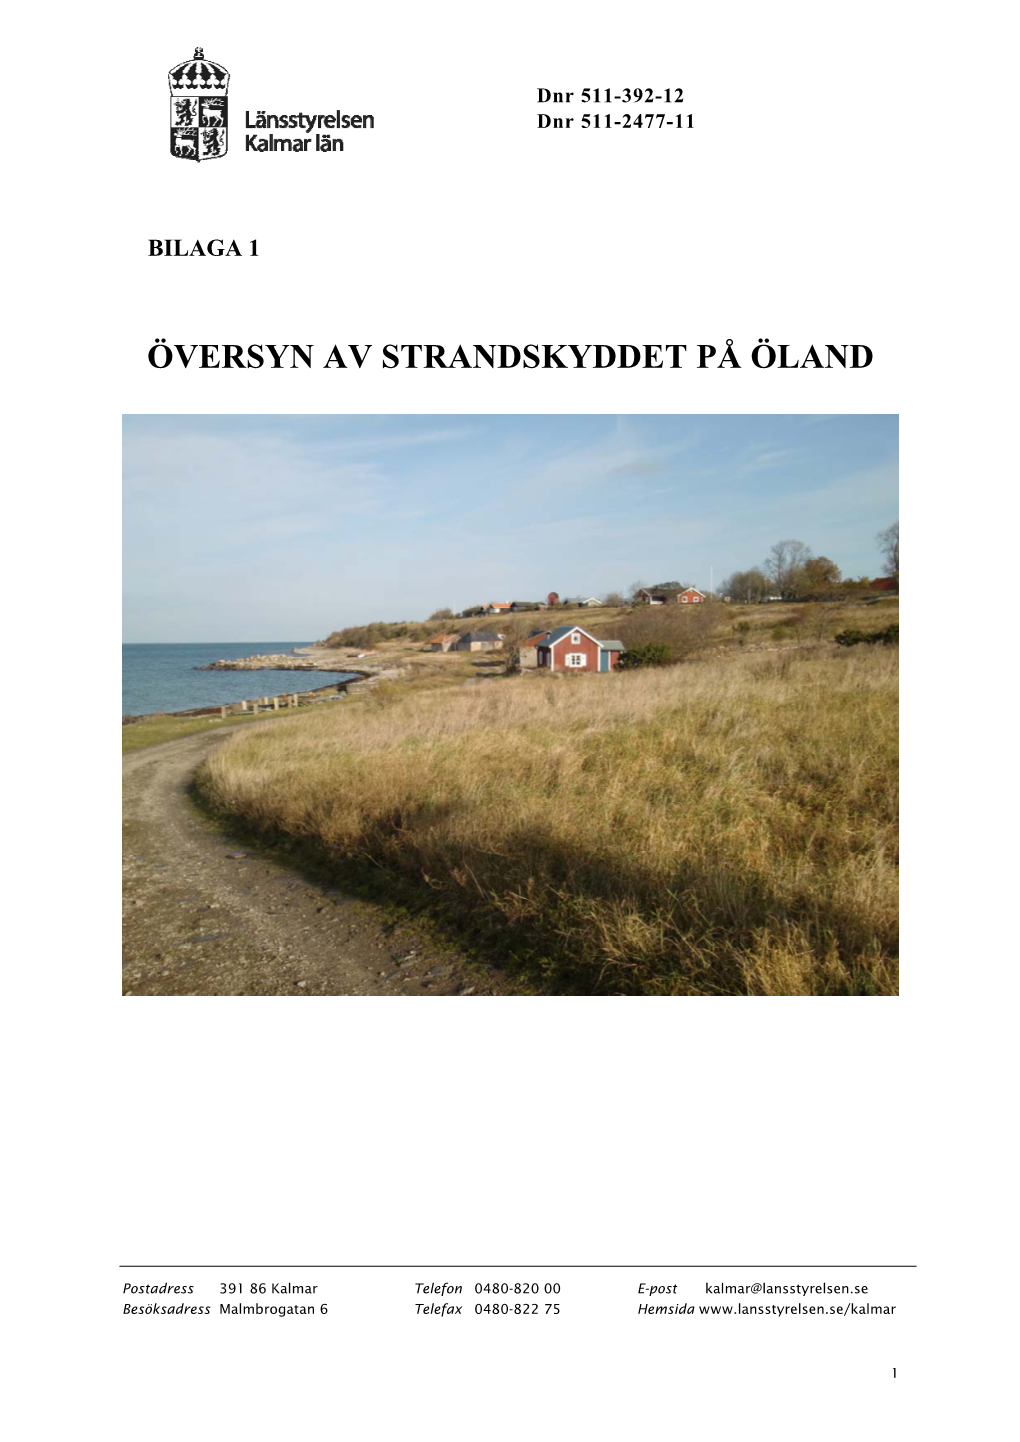 Översyn Av Strandskyddet På Öland